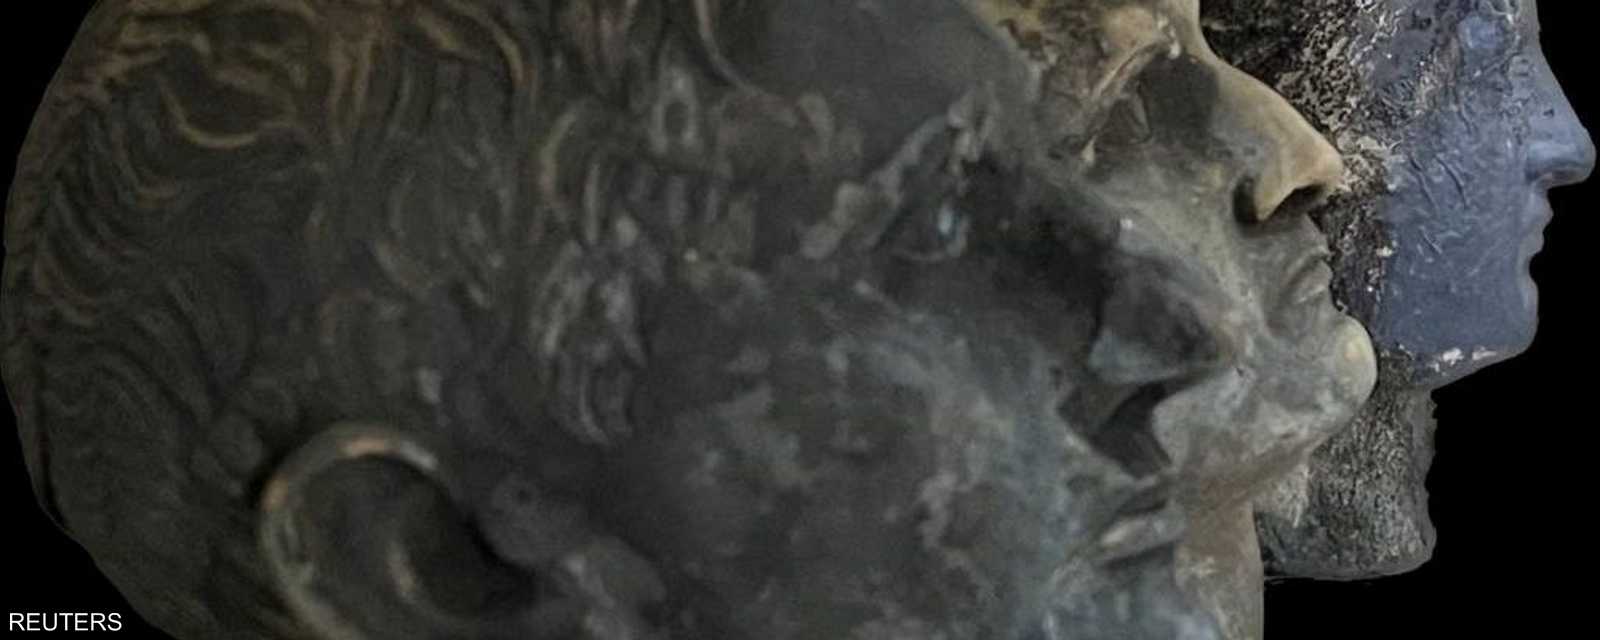 اكتشف باحثون في إيطاليا عشرات القطع الأثرية، من بينها تماثيل برونزية نحتت قبل ألفي عام وعملات معدنية